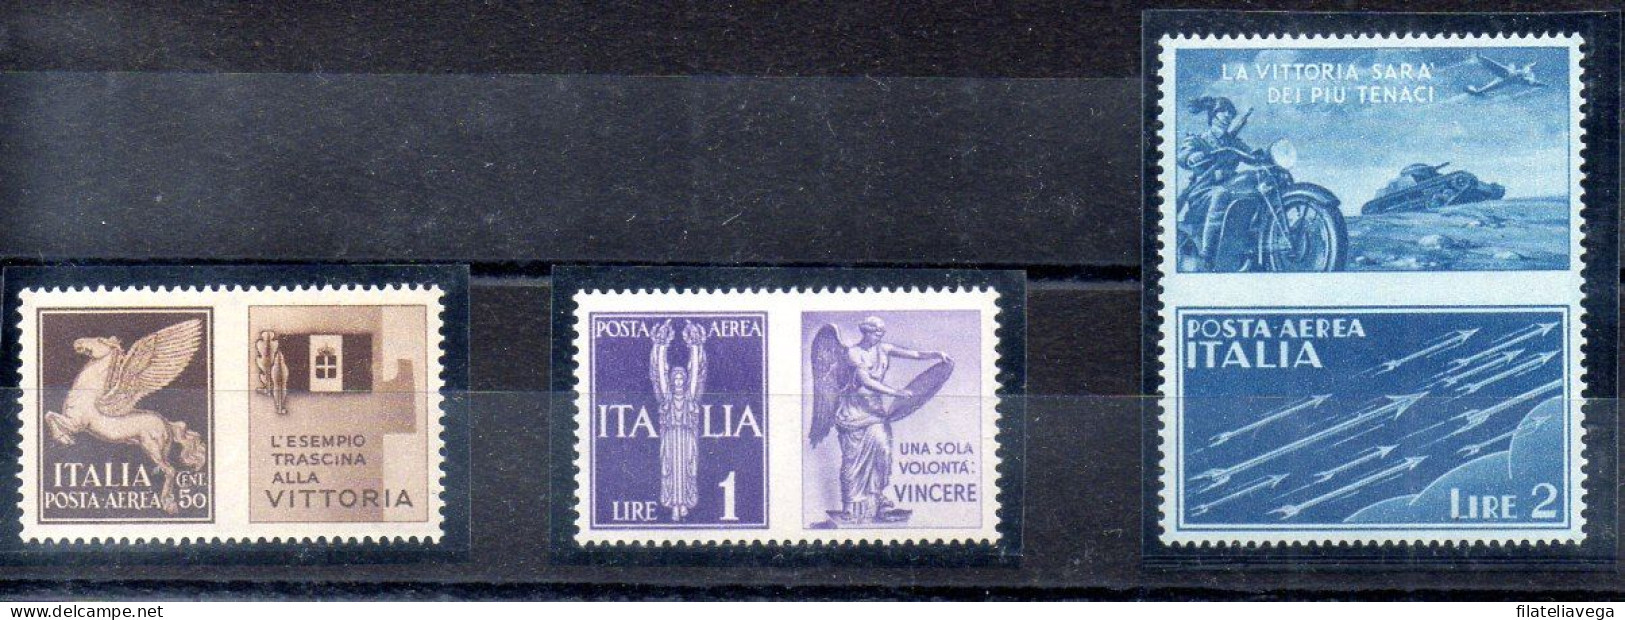 Italia 3 Series "PROPAGANDA DE GUERRA" Año 1942 -NO EMITIDOS- Nº Michel 328P5 + 330P6 + 331P7 * - Kriegspropaganda